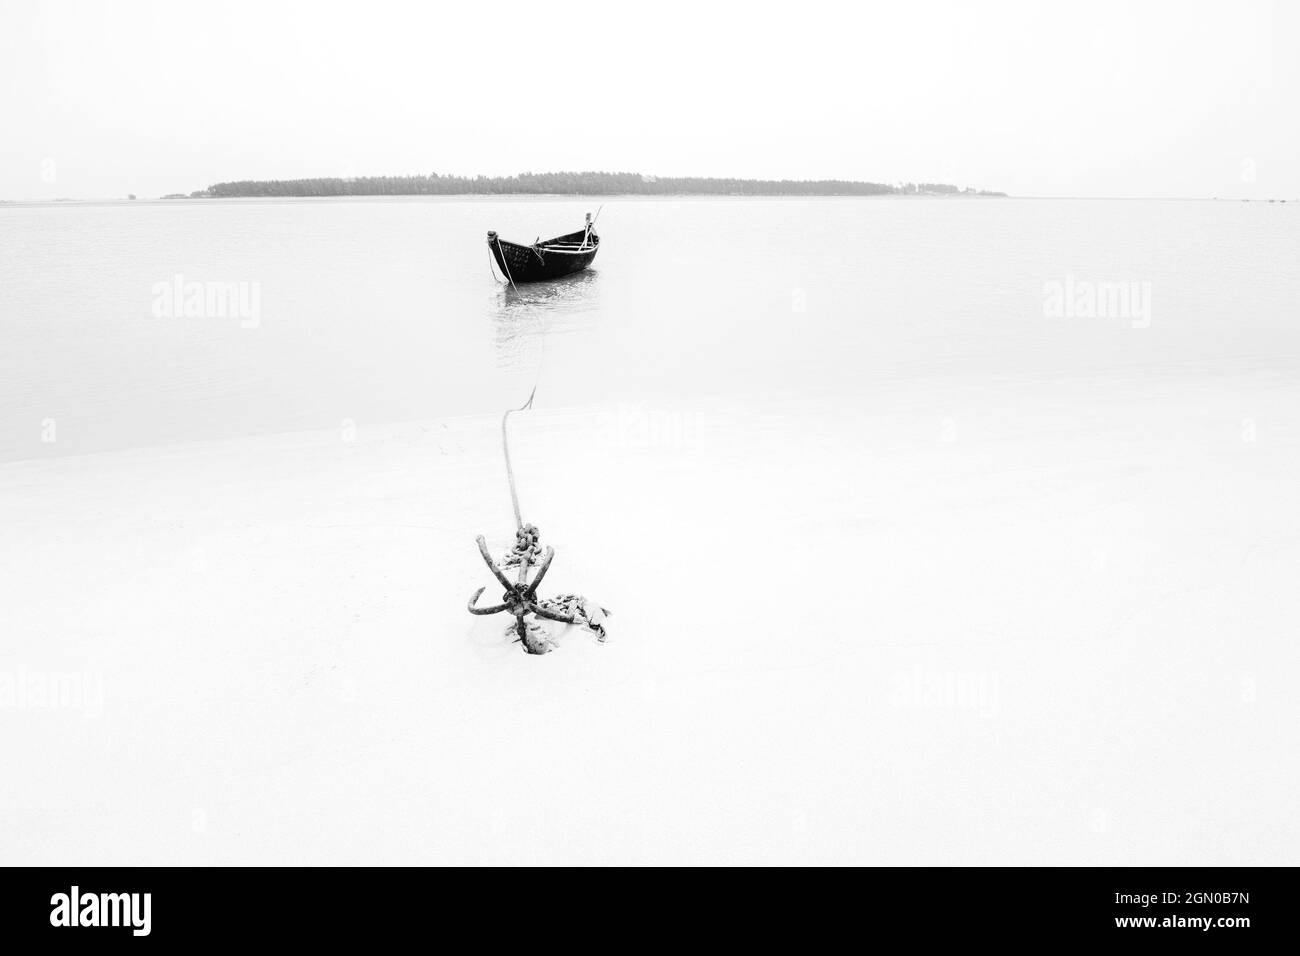 High-Key-Bild eines Bootes auf dem Wasser durch ein Seil mit einem Anker auf Flussbett gebunden. Tajpur, Westbengalen, Indien. Minimalistisches Bild mit Schwarzweiß. Stockfoto